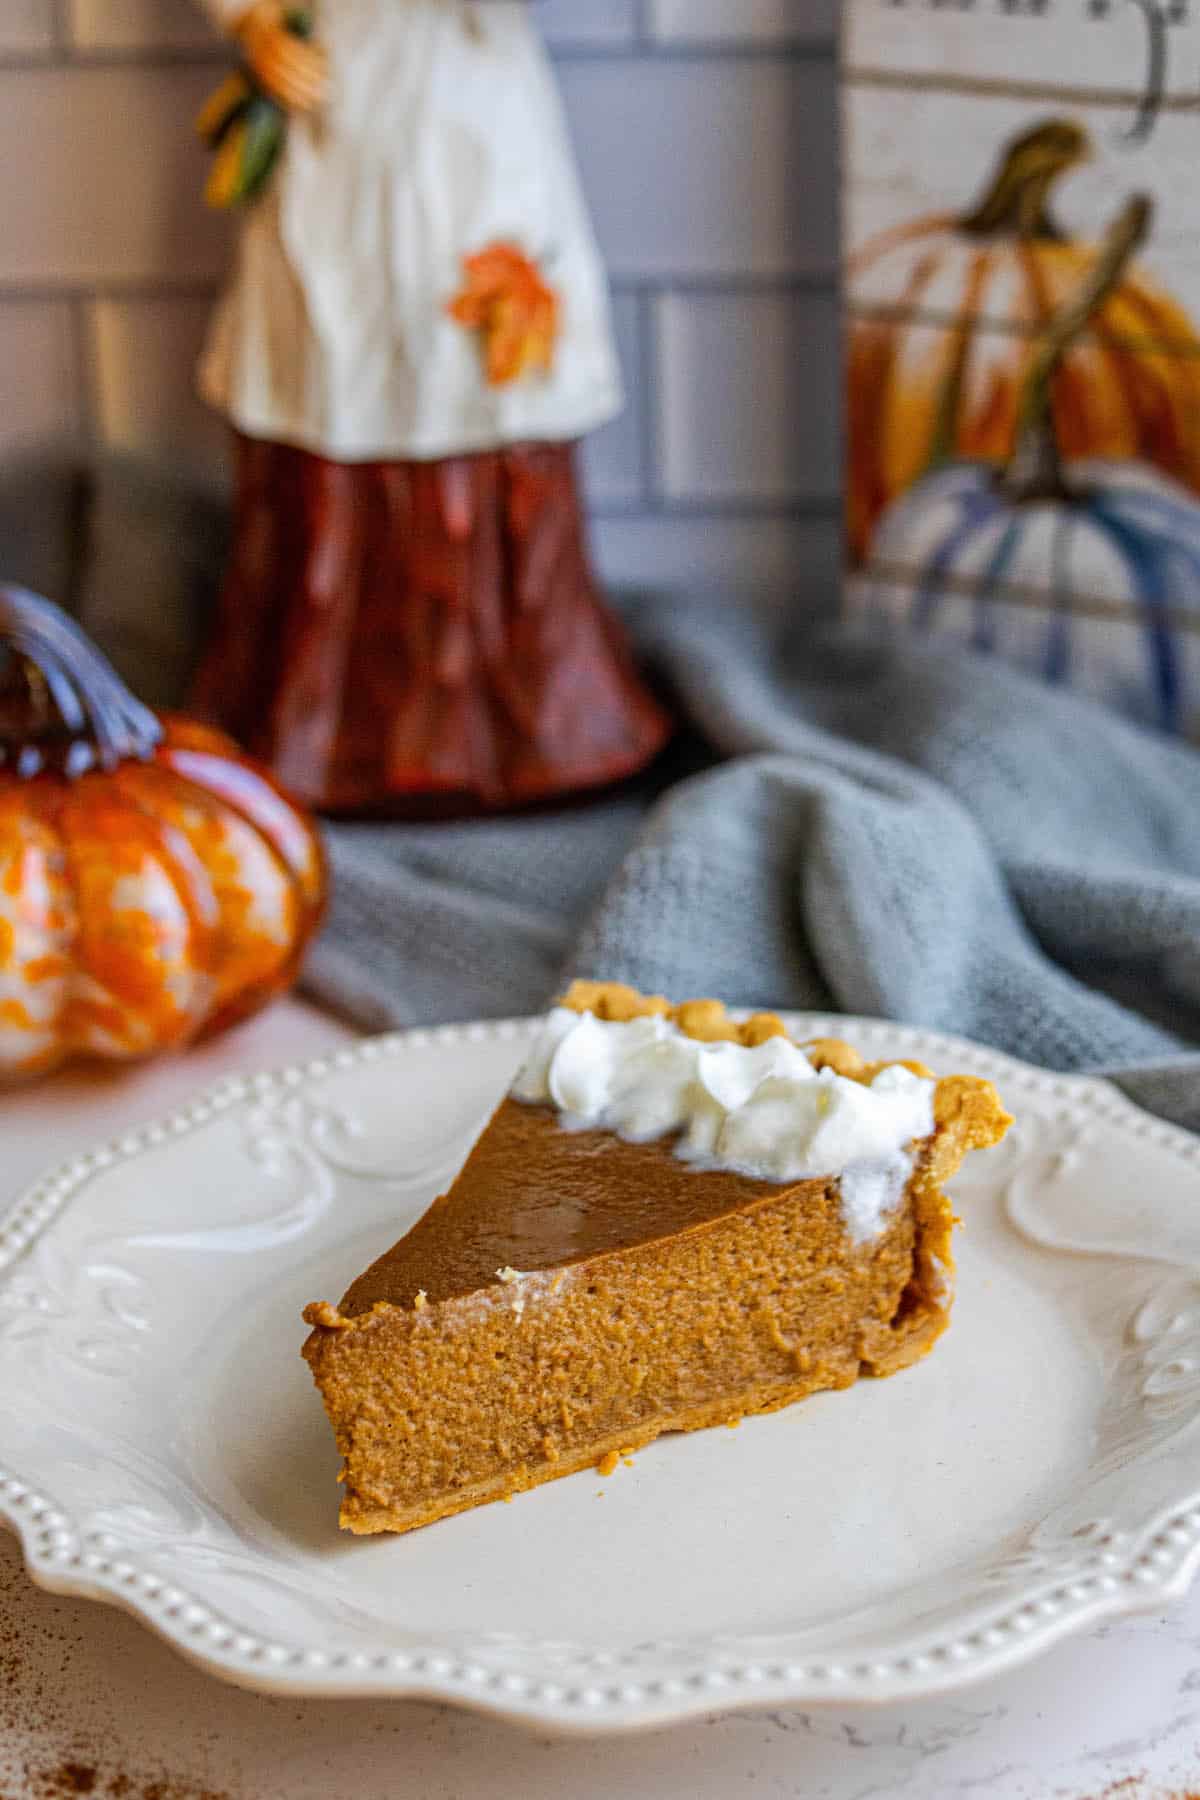 A delectable slice of pumpkin pie.